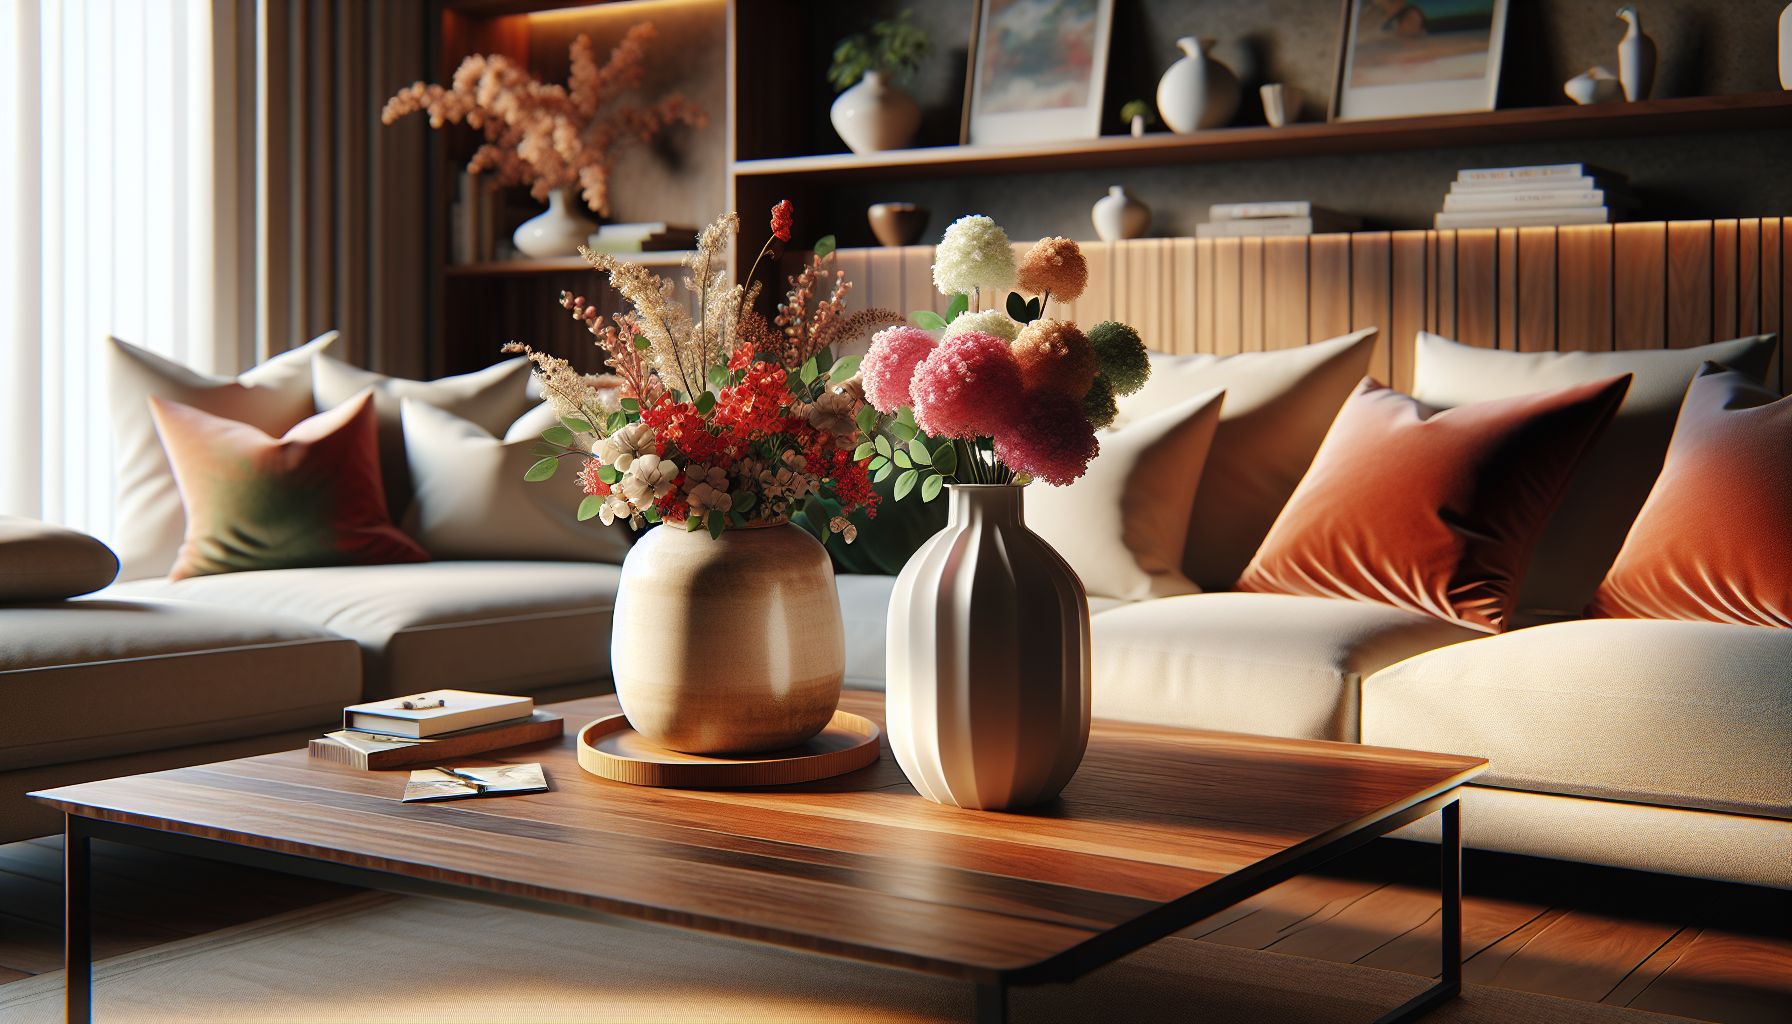 Ideen für schöne Tischdeko in deinem Wohnzimmer- Wähle Vasen für Charakter